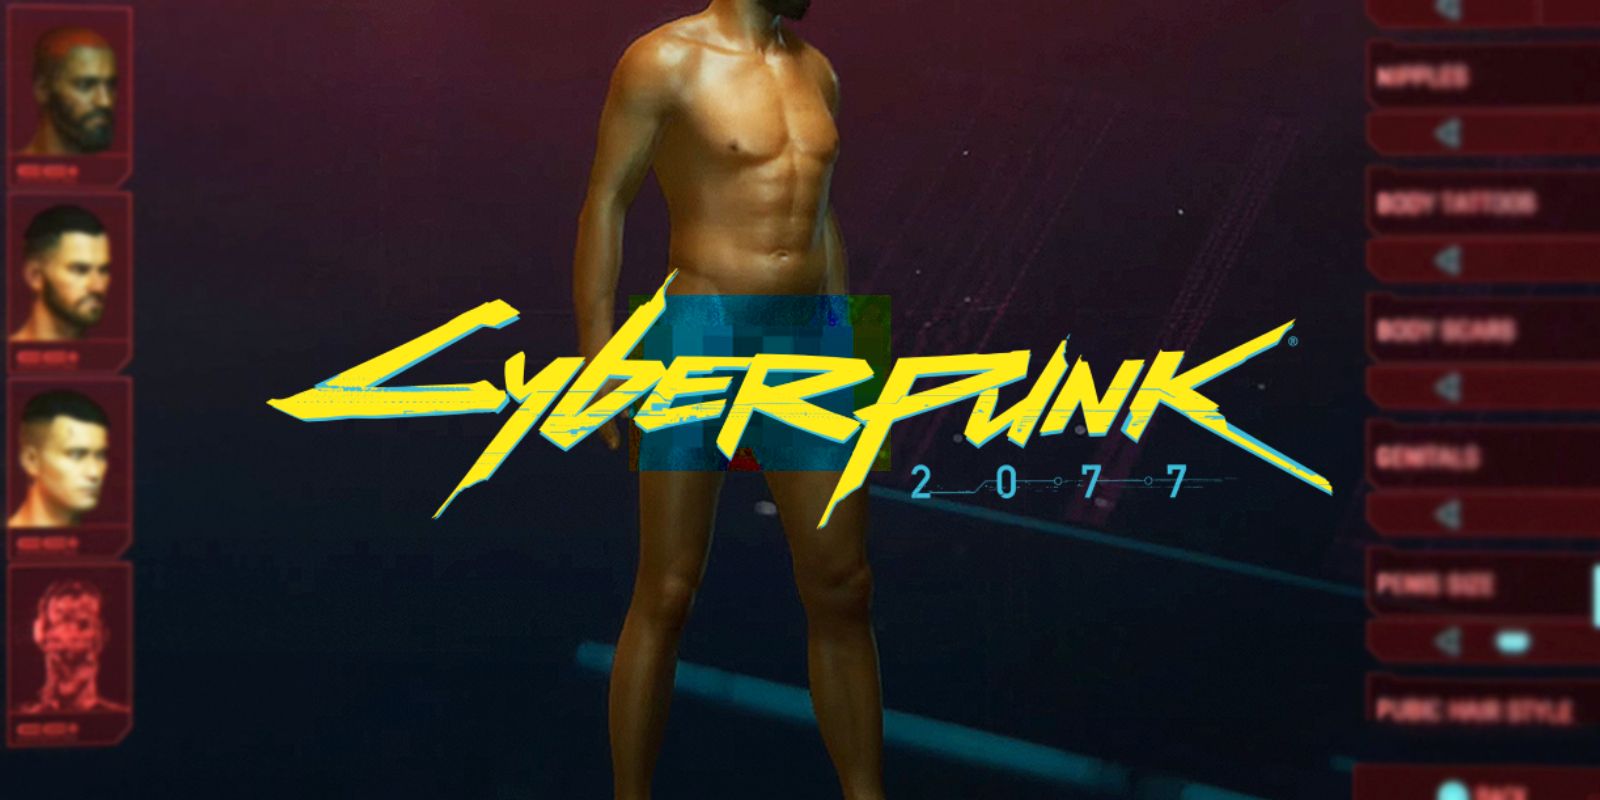 La característica más inútil de Cyberpunk 2077 muestra su falta de controversia real